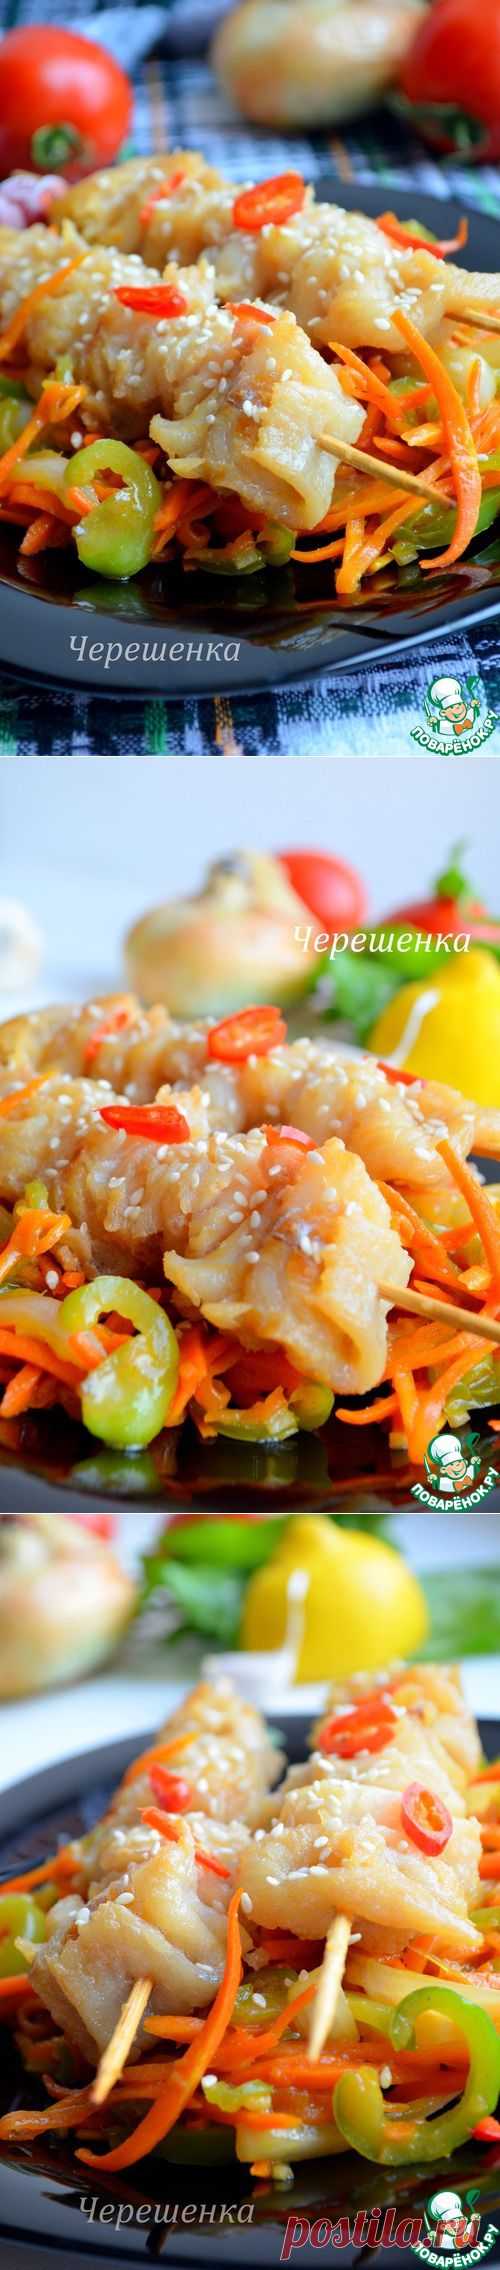 Шашлычки из рыбы с овощами - кулинарный рецепт